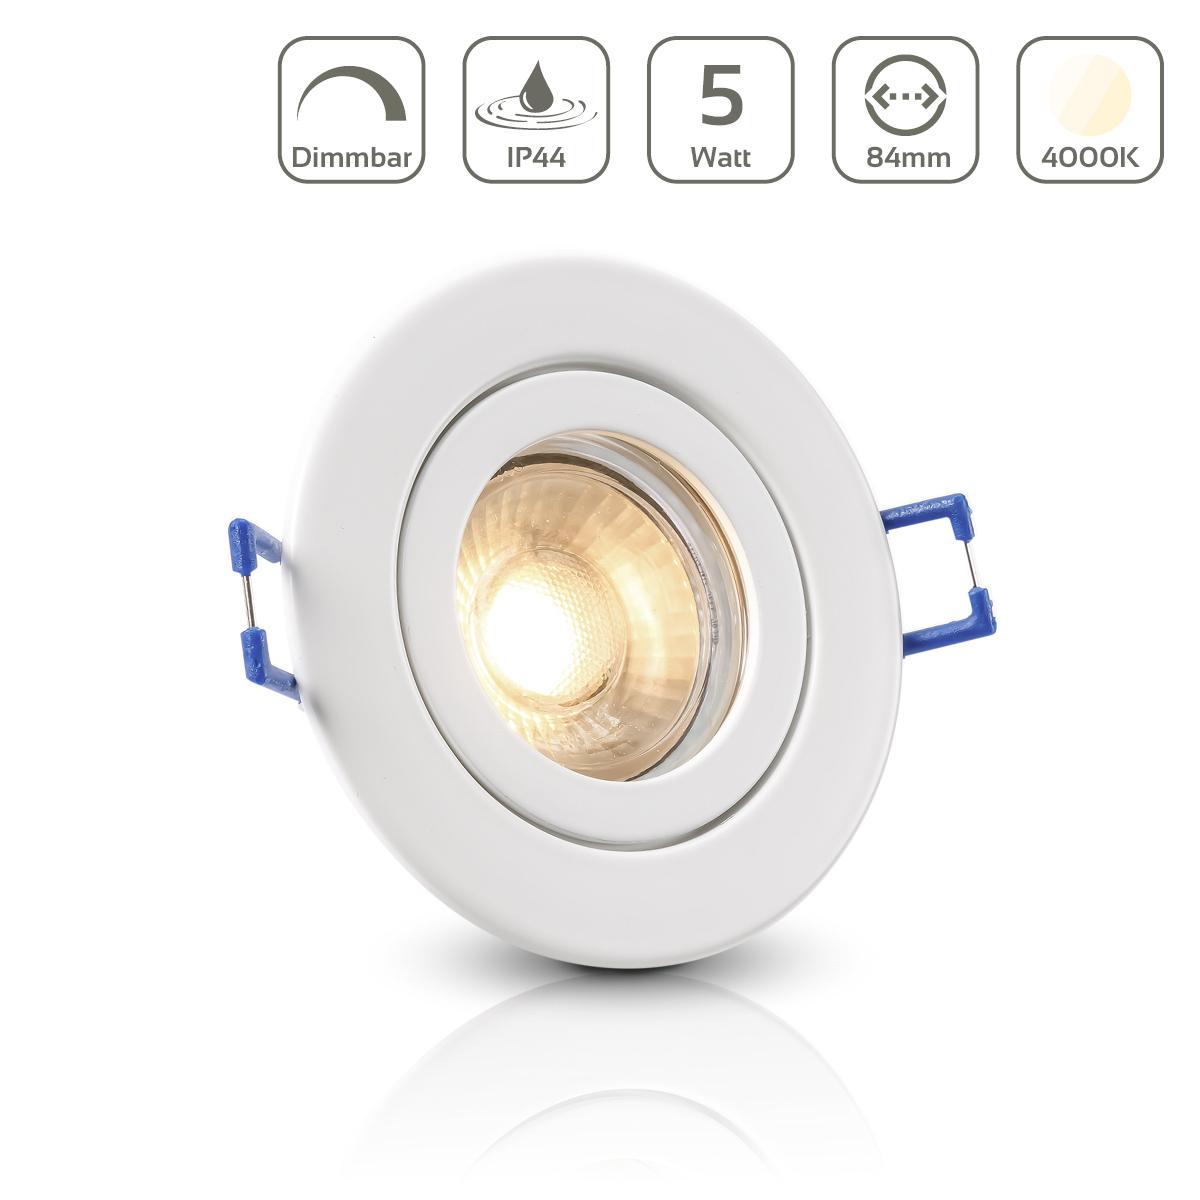 Einbauspot IP44 rund - Farbe: weiß - LED Leuchtmittel: GU10 5W neutralweiß dimmbar